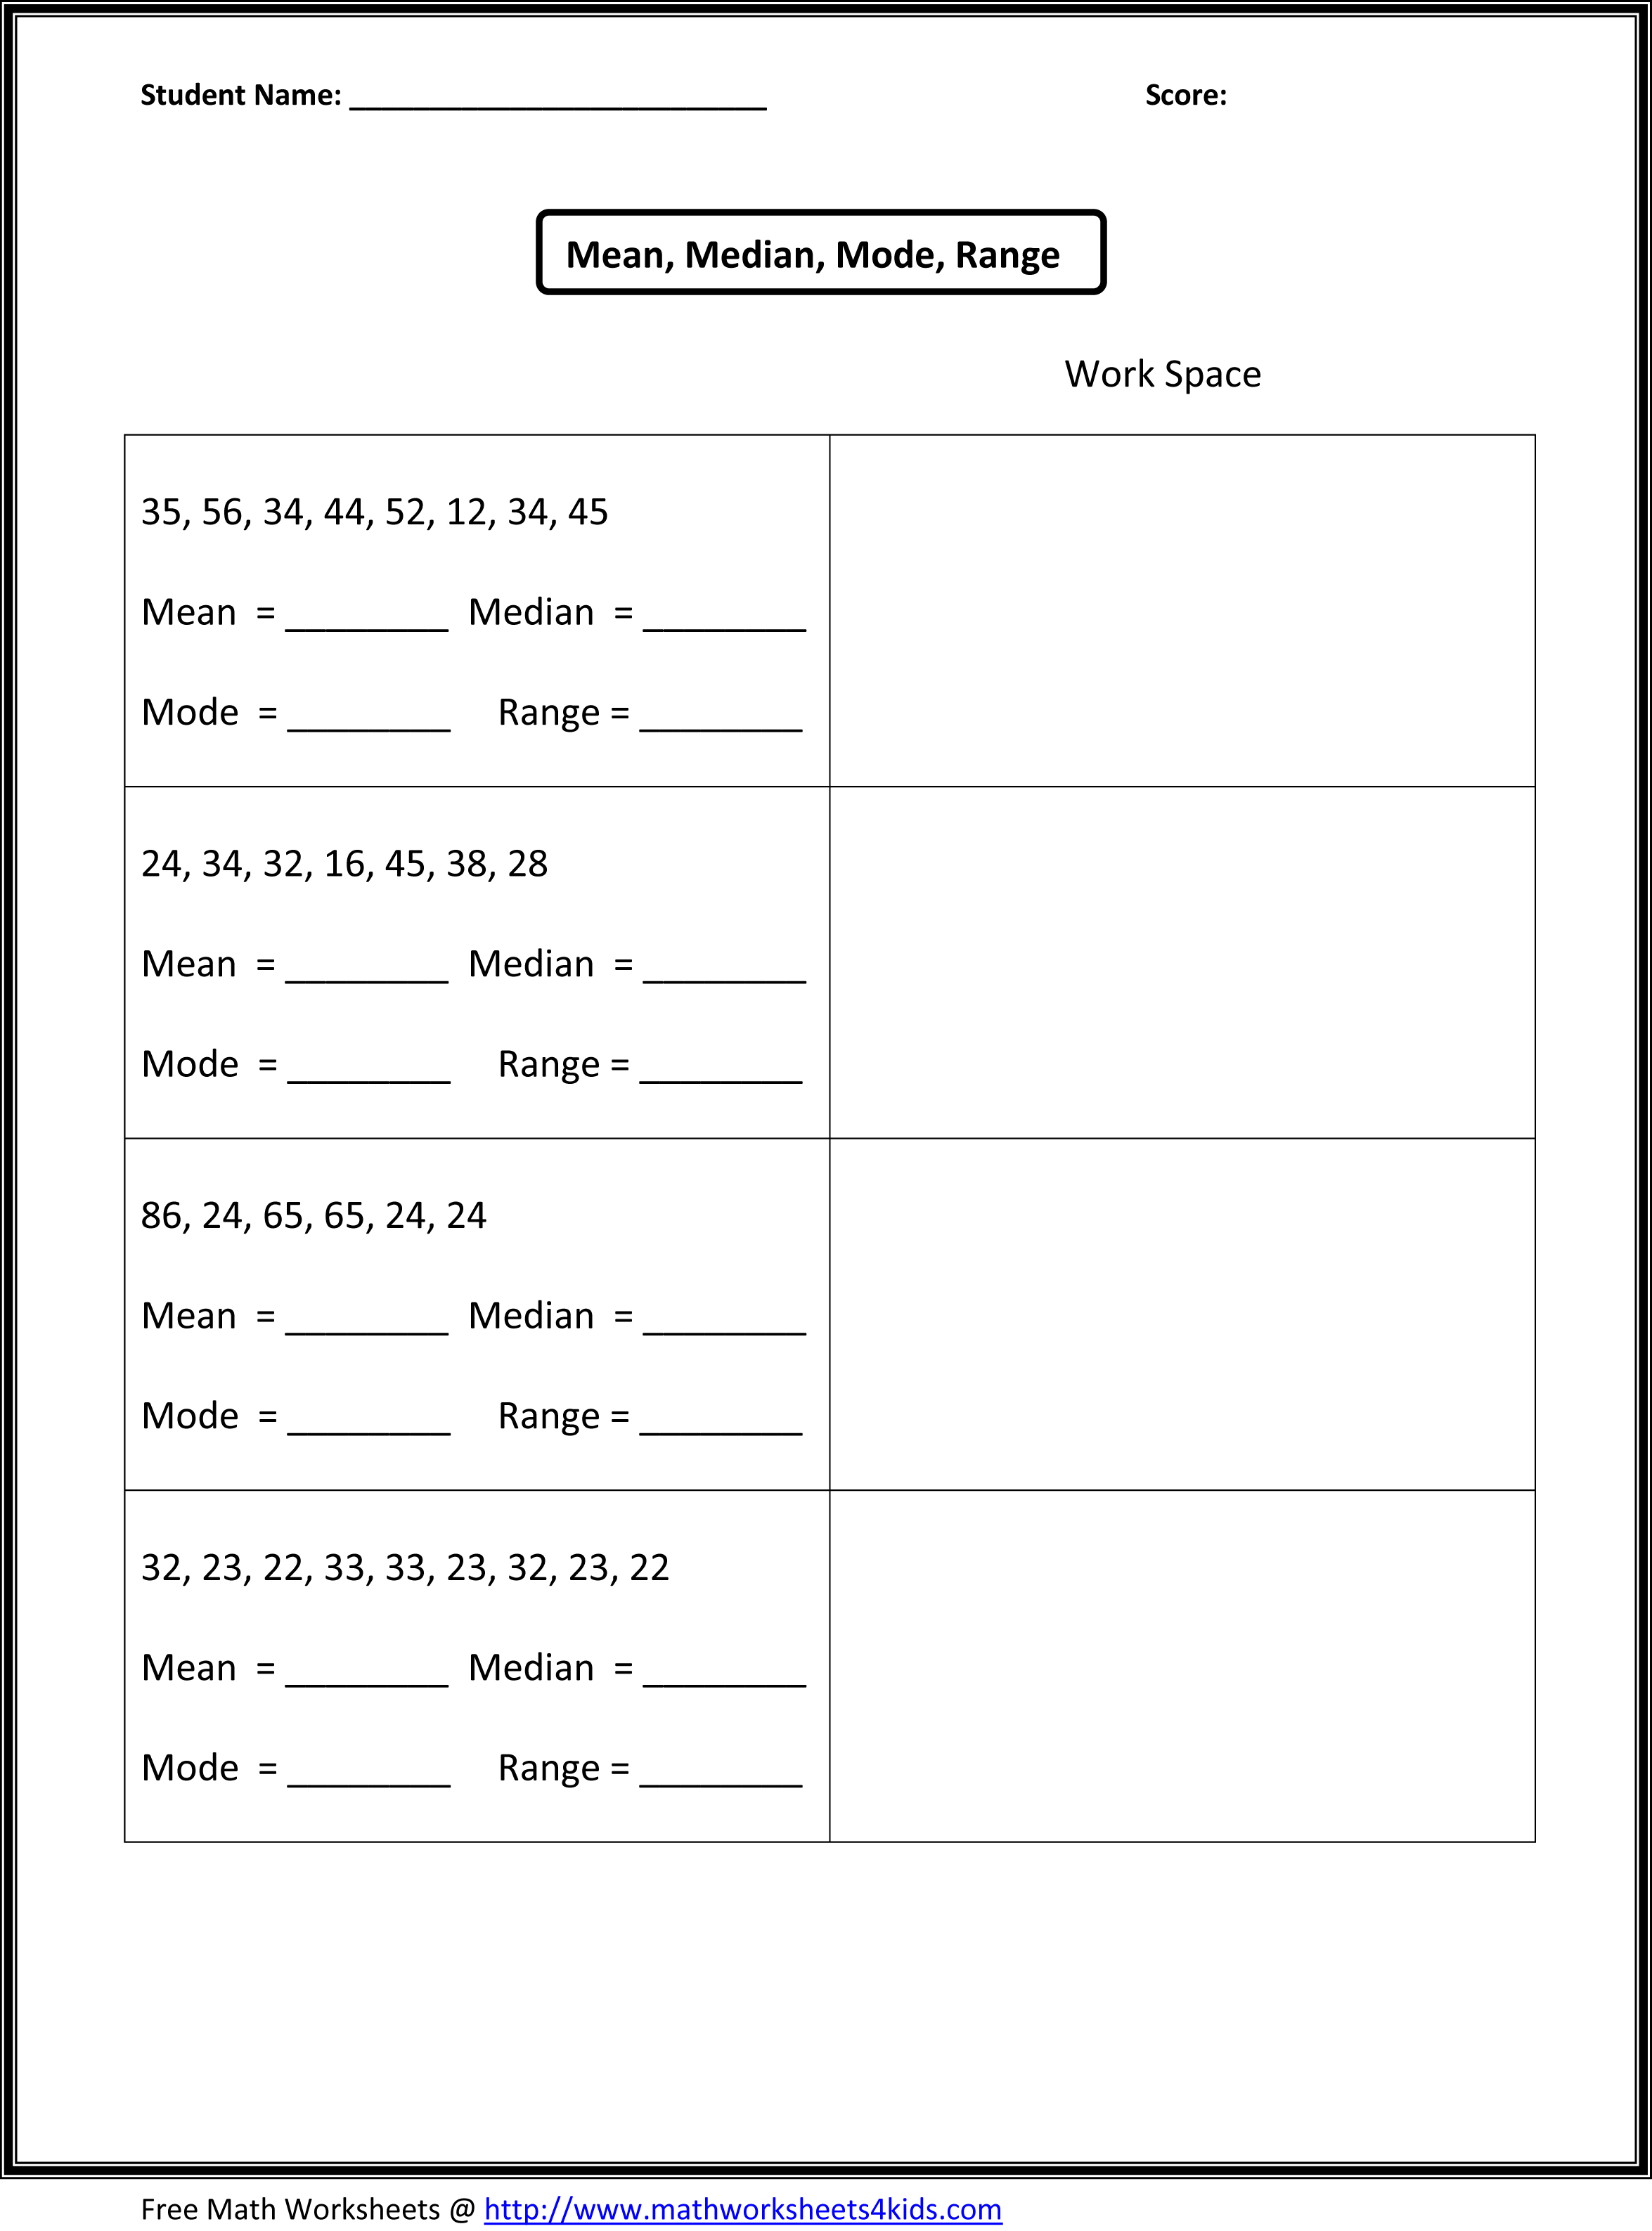 6th Grade Math Worksheets Mean Median Mode Image